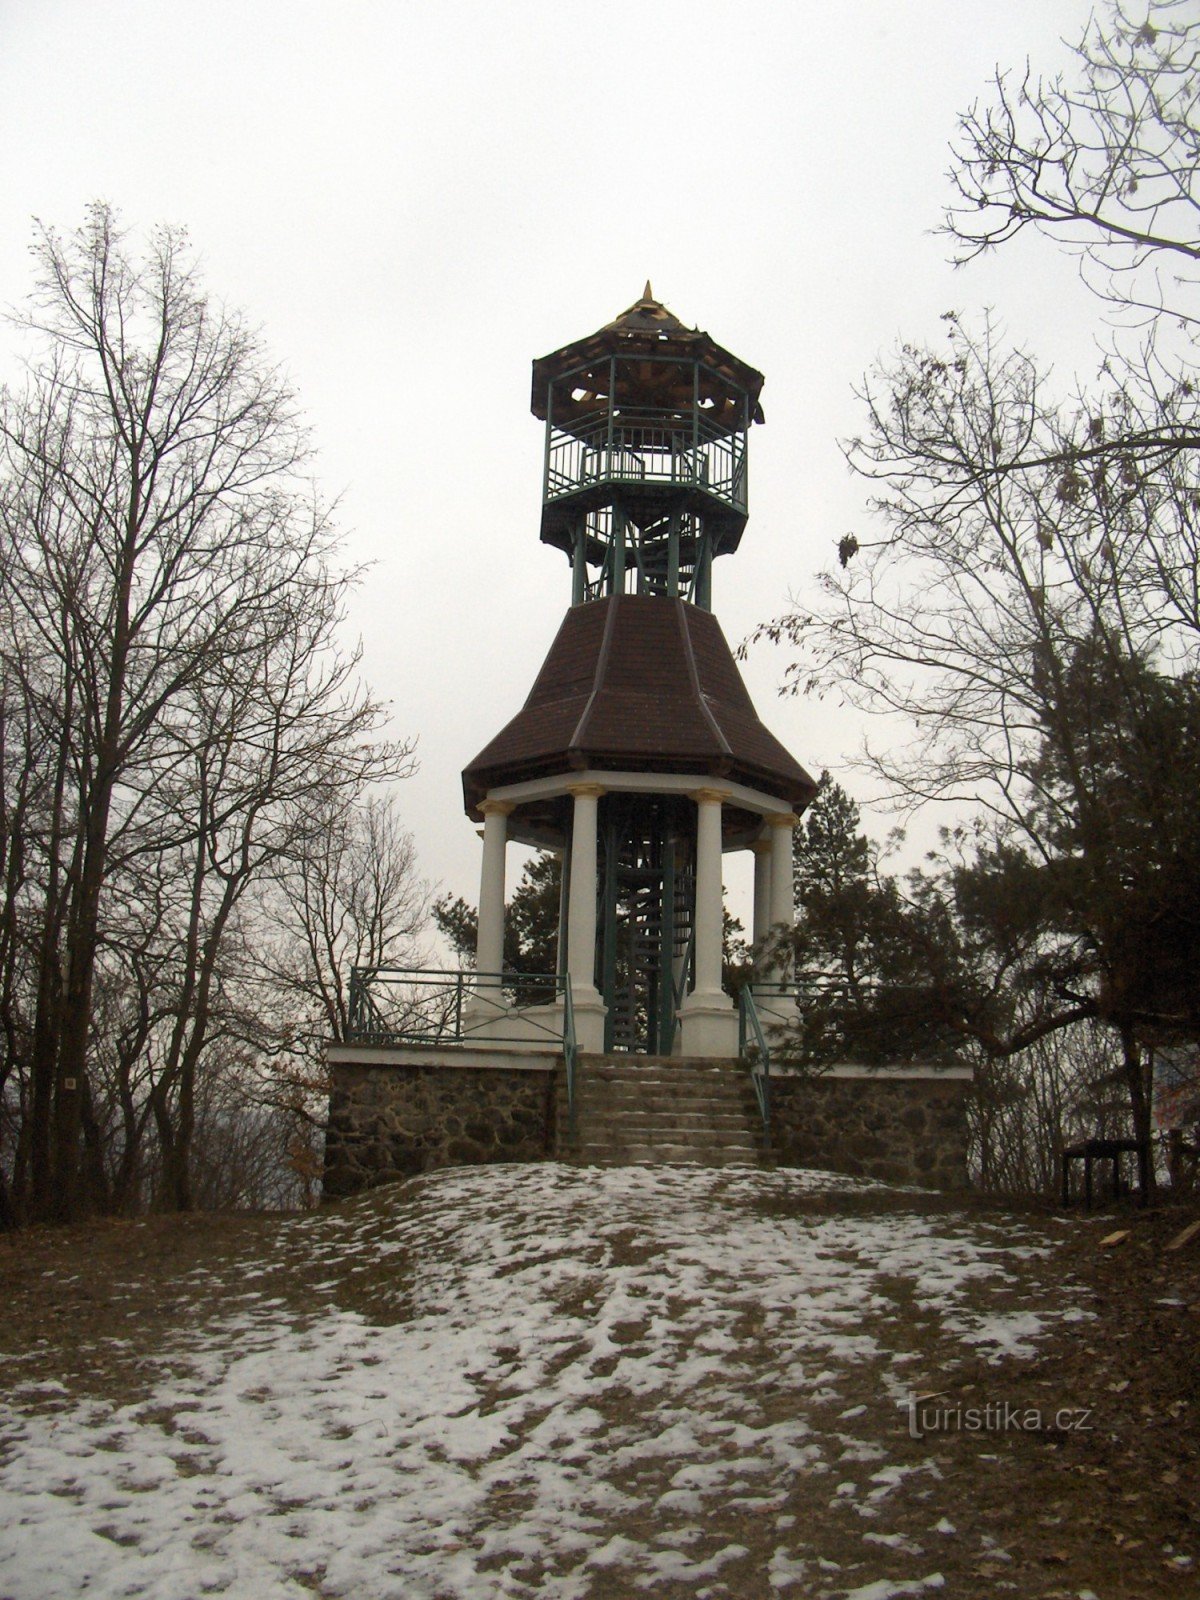 torre di avvistamento su Svátý kopeček